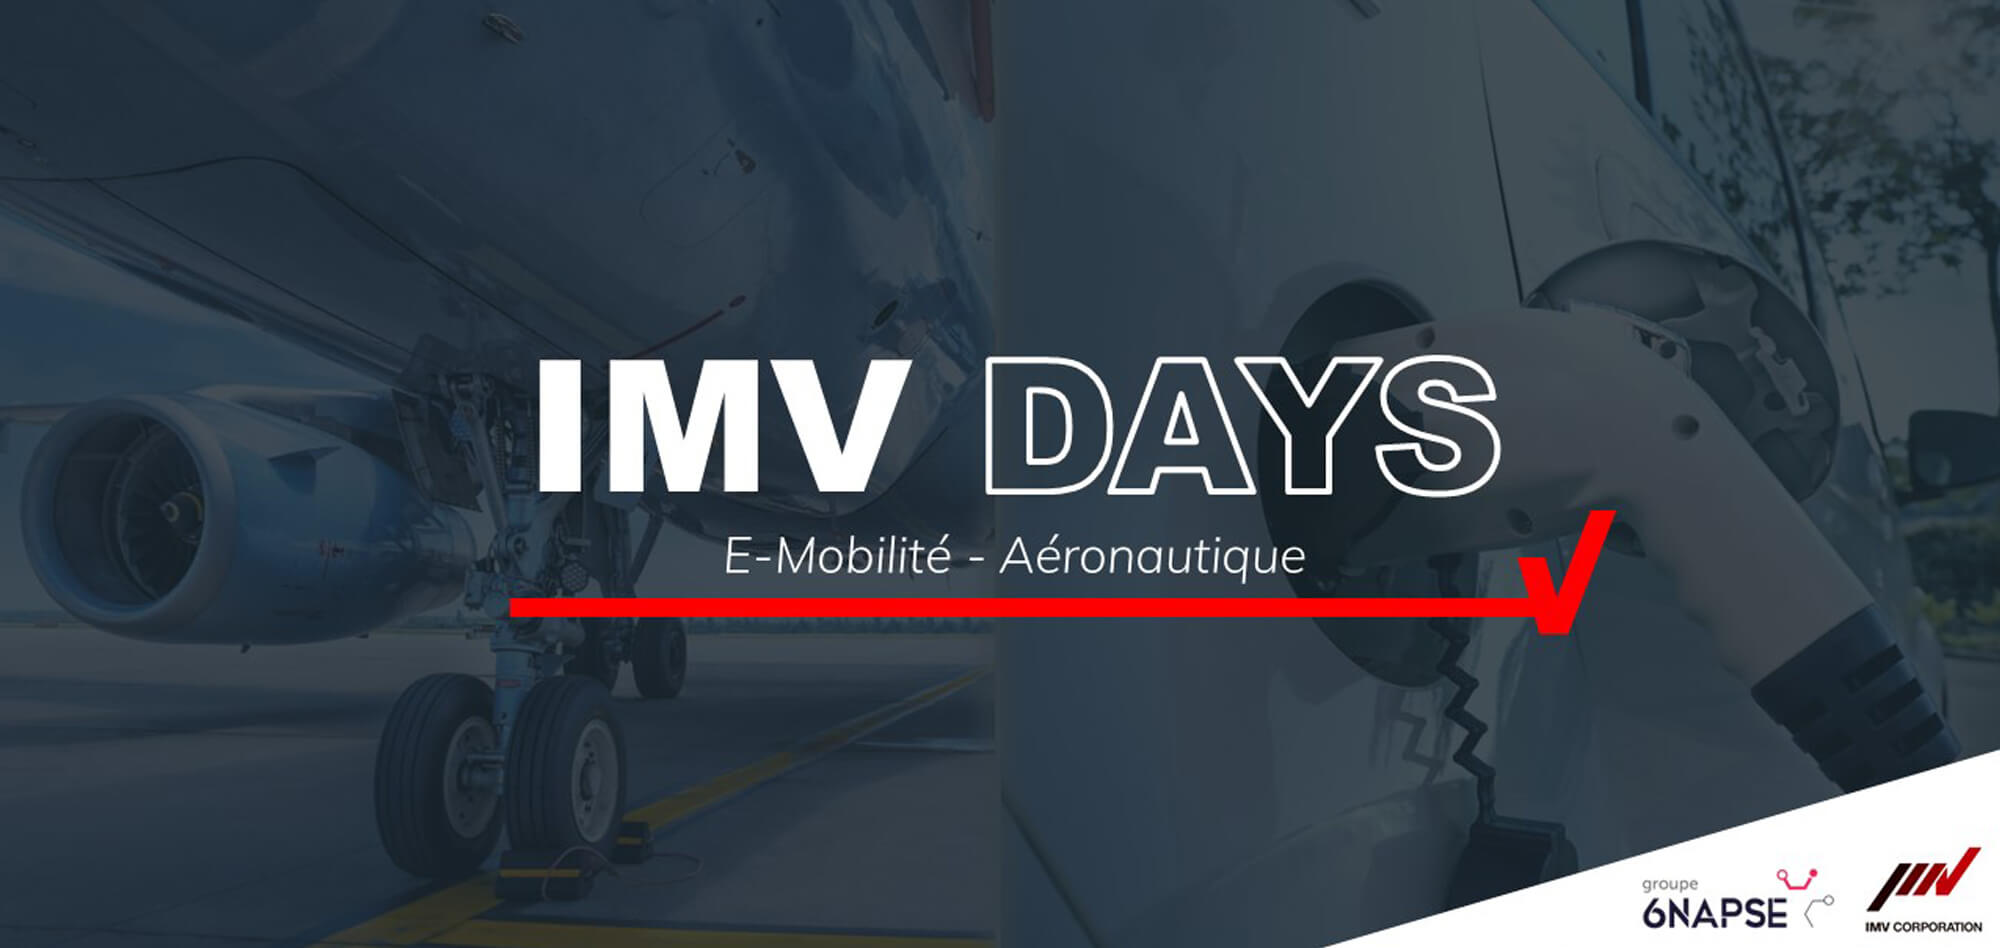 IMV Corporation, 1er fabricant mondial de vibrateurs électrodynamiques, organise les 29 et 30 mars 2023 ses IMV DAYS. L’événement se tiendra au Test Center du Groupe 6NAPSE à Vernon, en Normandie.